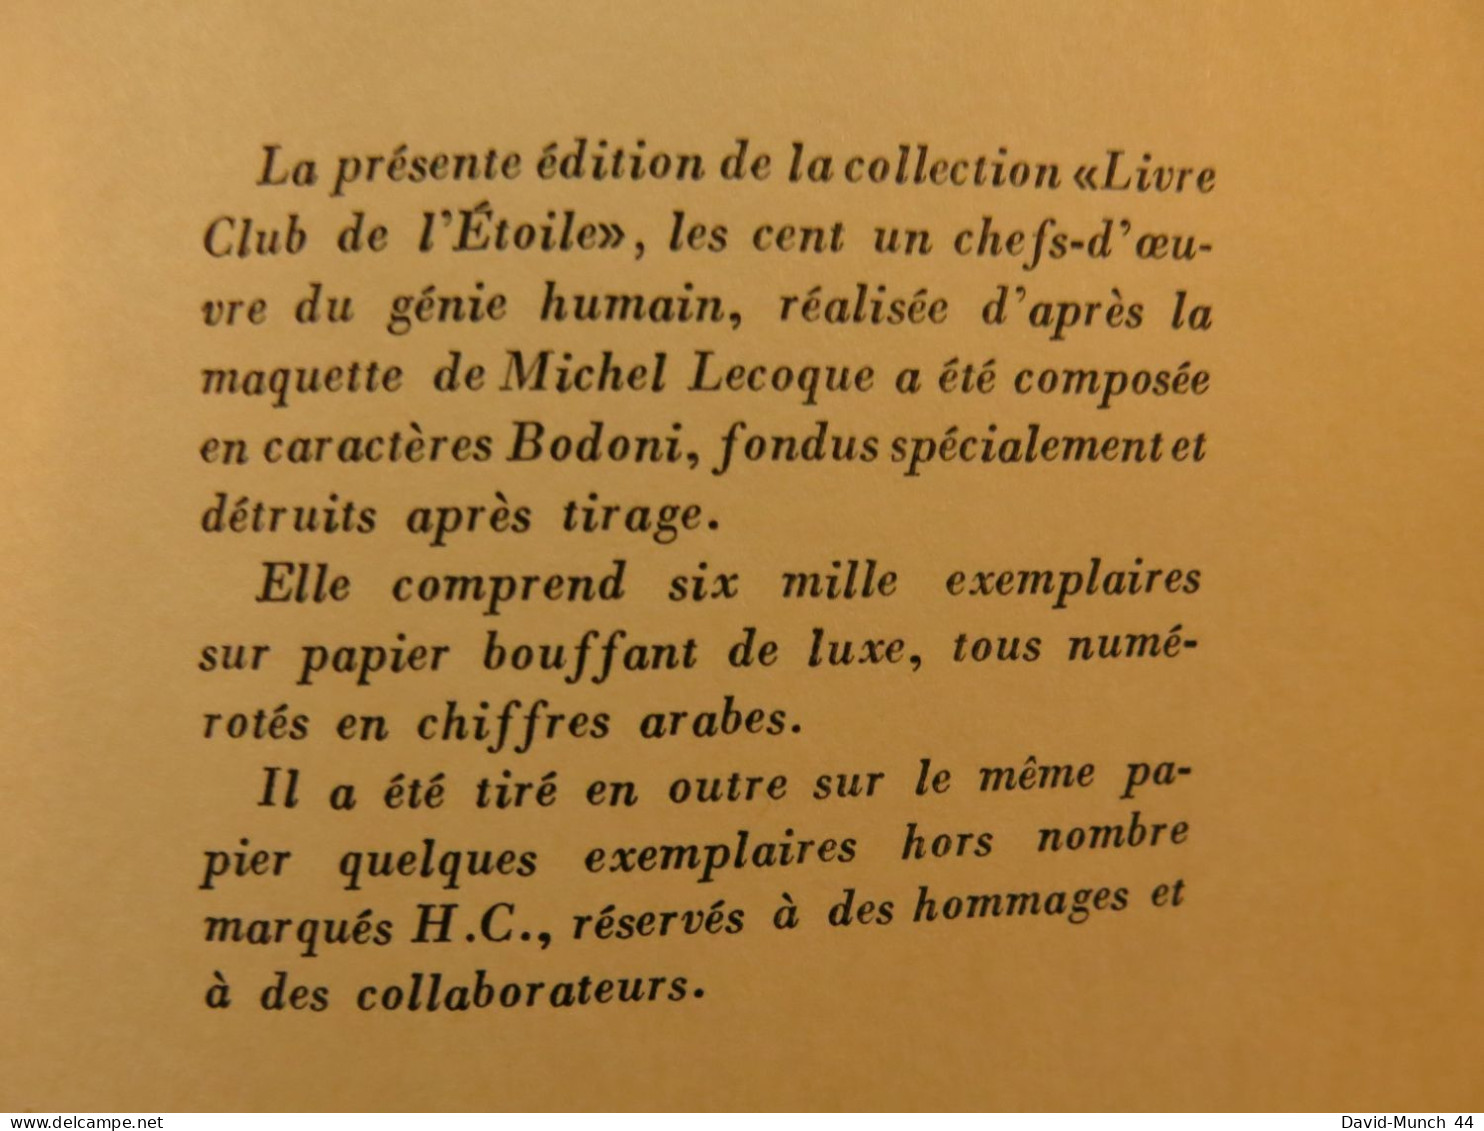 Notre-Dame De Paris de Victor Hugo. Editions Baudelaire, Collection Les chefs-d'œuvre du Génie humain, Paris. 1968